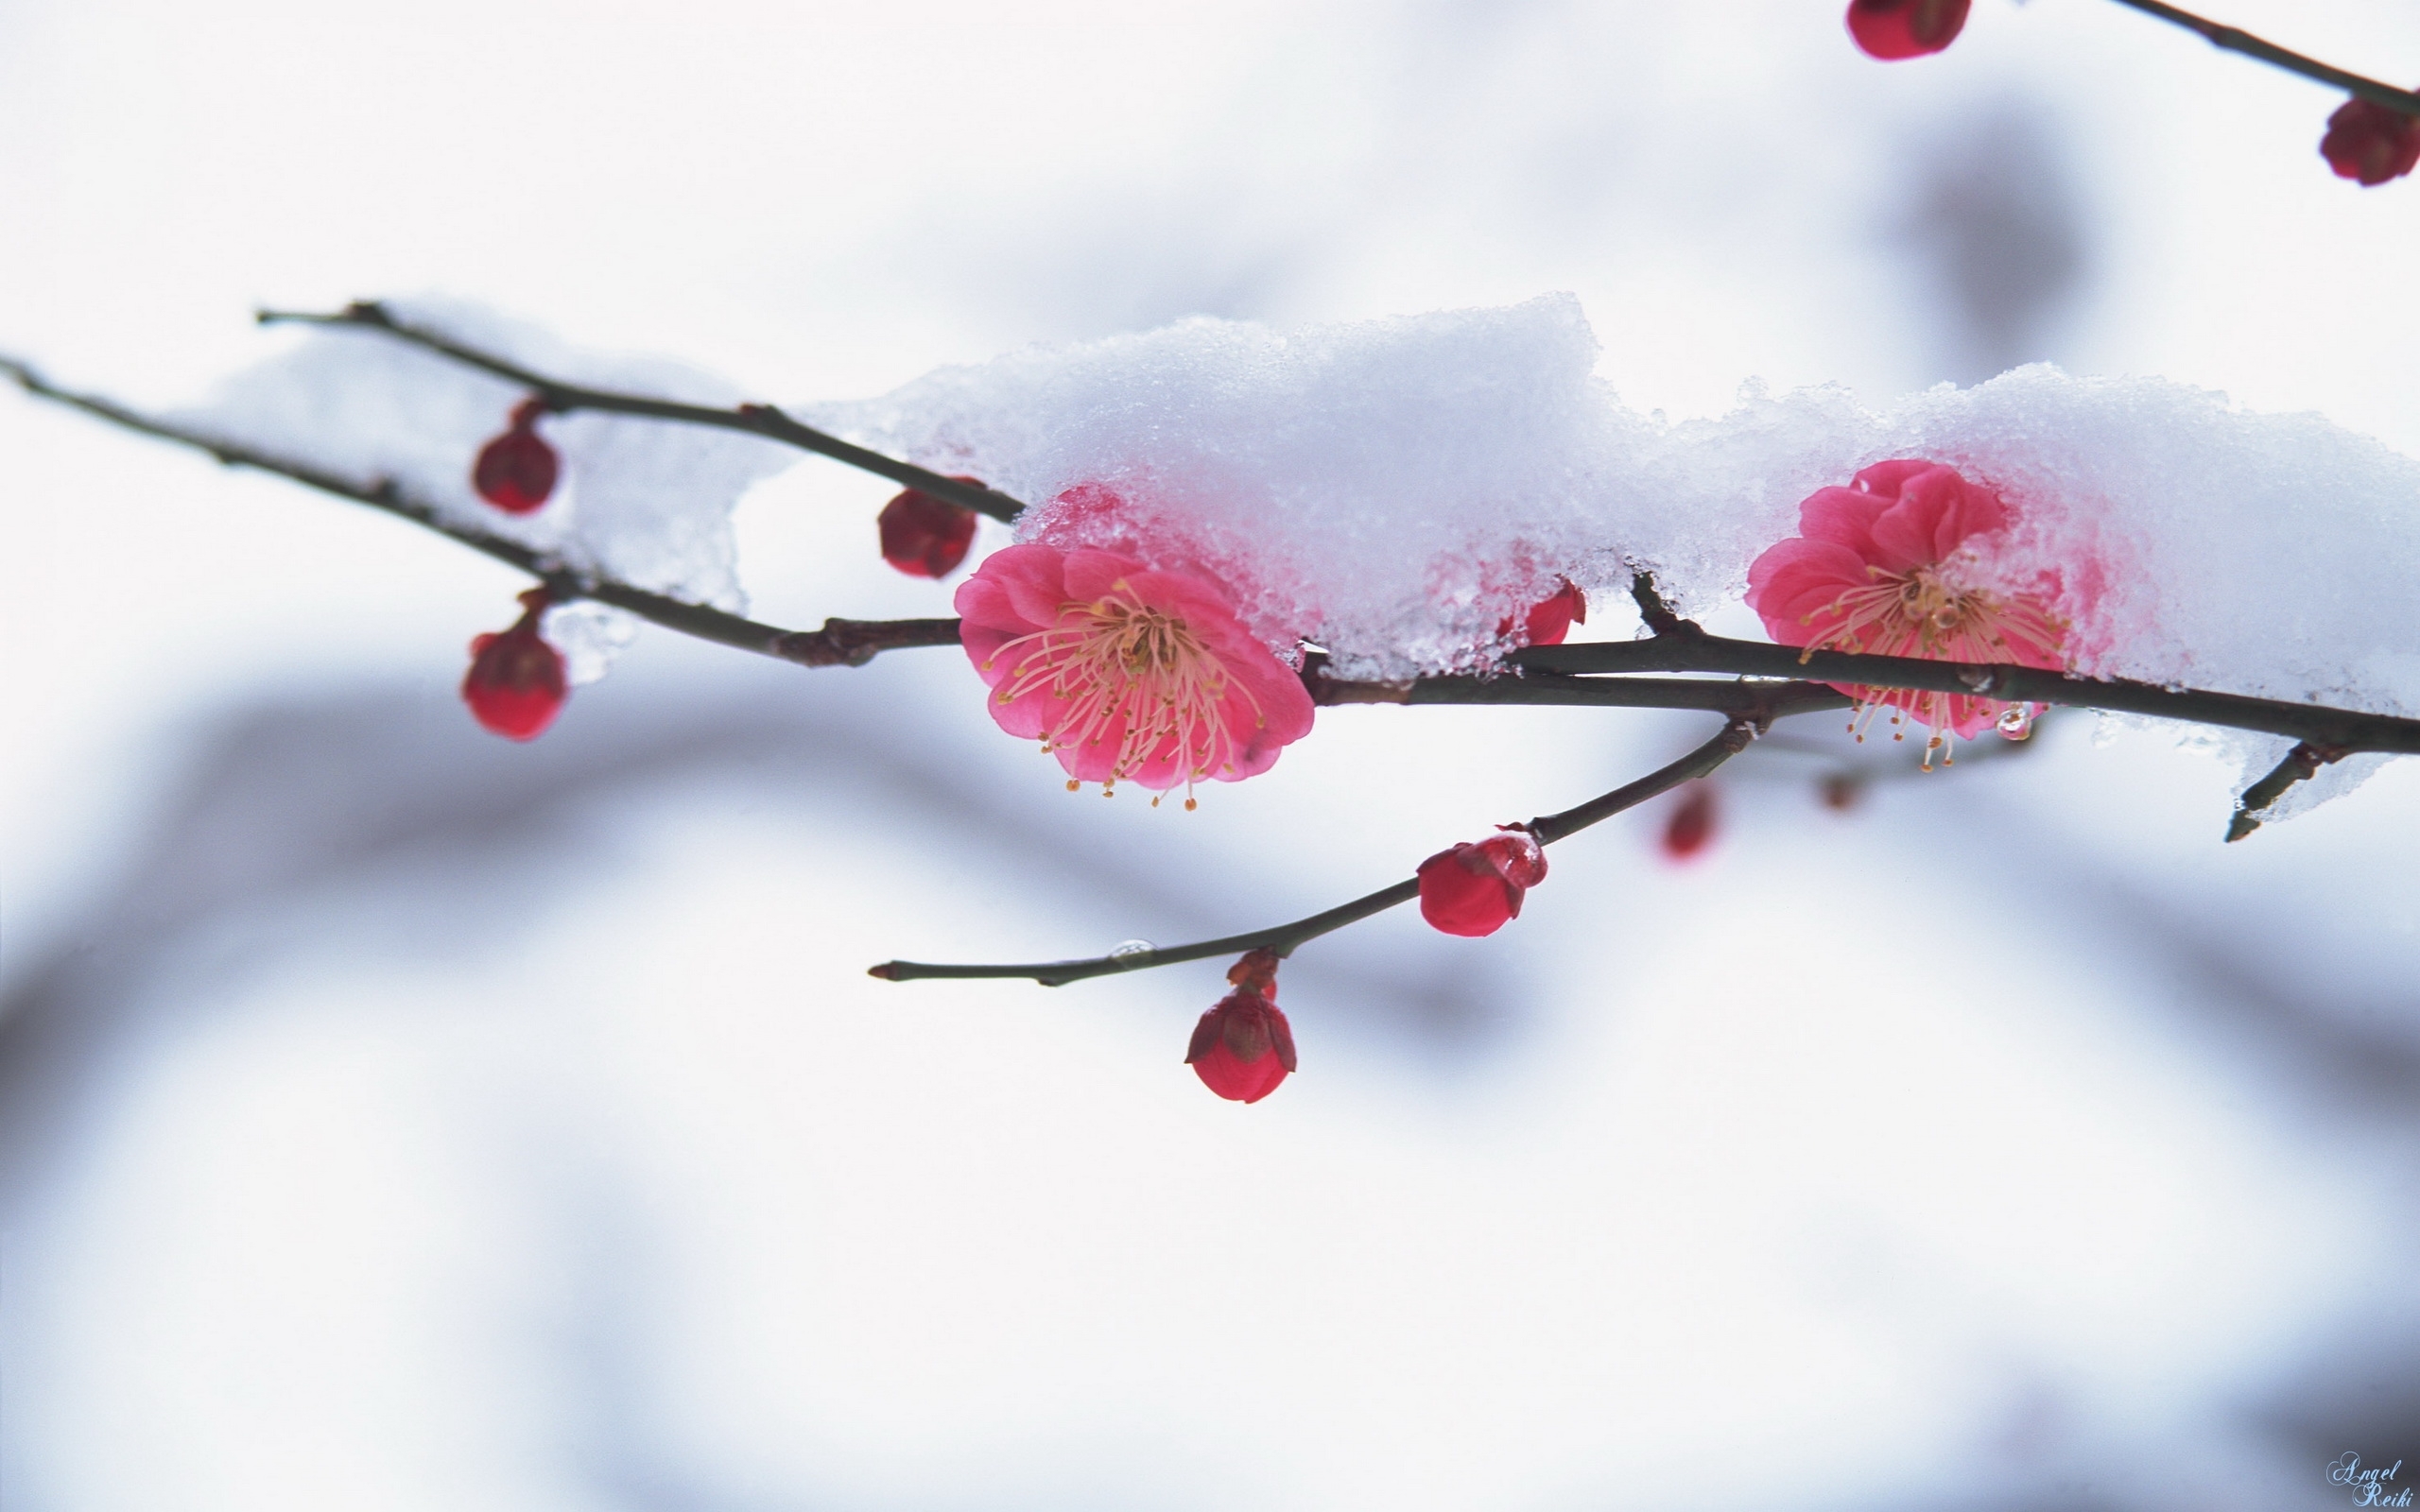 Скачать обои бесплатно Снег, Цветы, Зима, Растения картинка на рабочий стол ПК